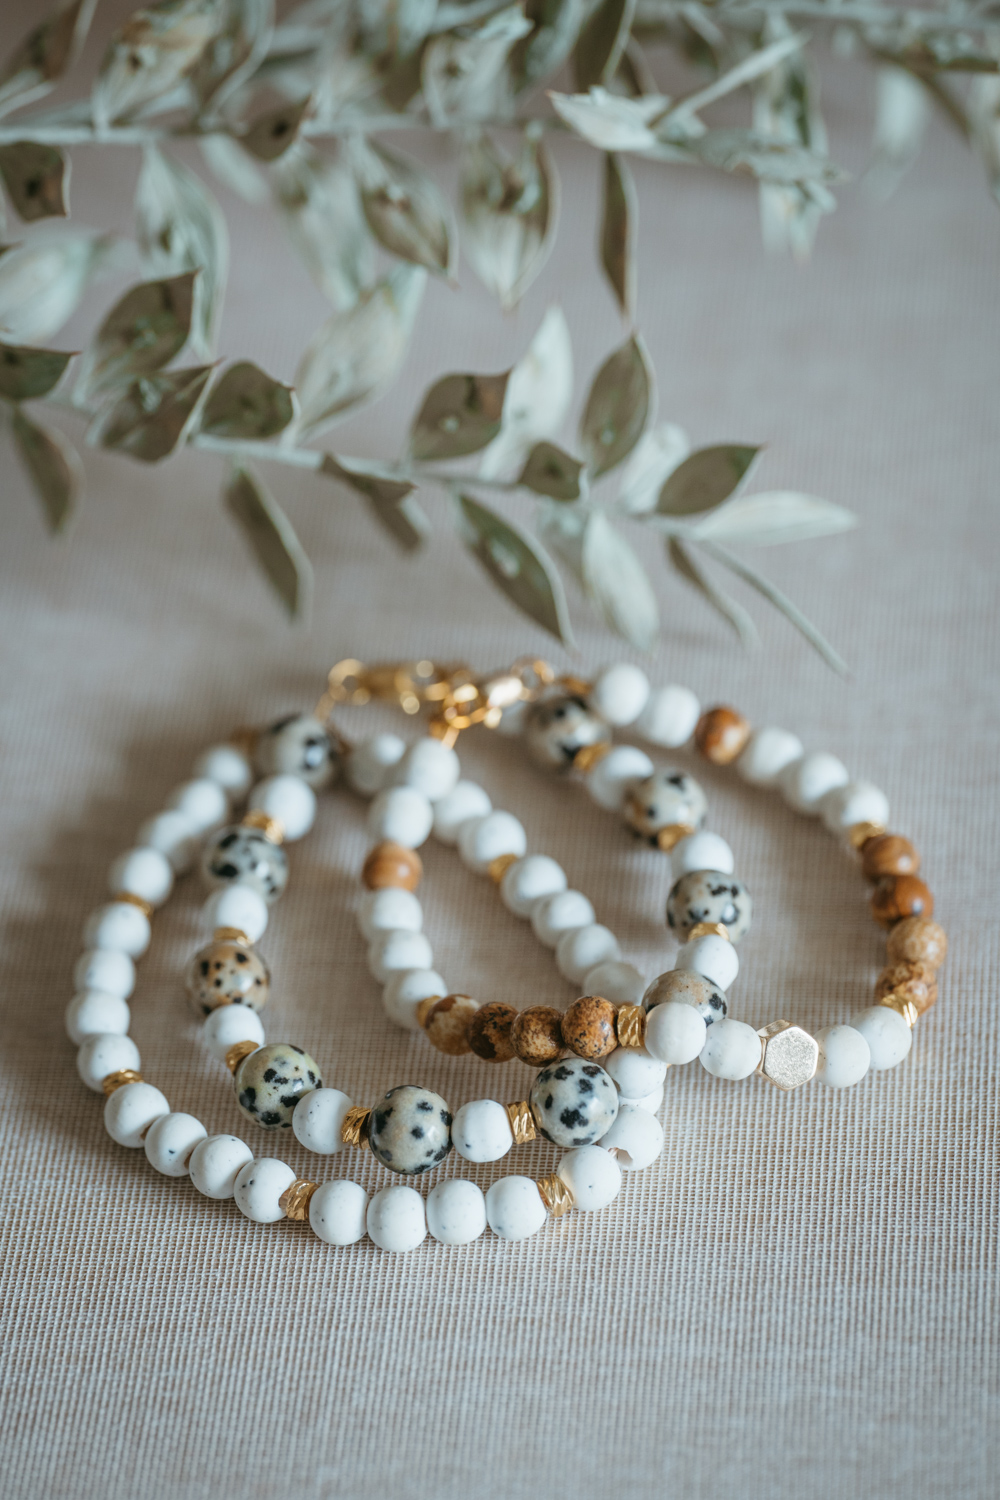 Bei diesen selbstgemachten Perlenarmbändern verwende ich weiße Perlen und goldene Zwischenperlen und bringe durch andersfarbige Perlen etwas Abwechslung rein. Hier geht’s zur kostenlosen DIY Anleitung! #perlenschmuck #diy #armband @melaliving